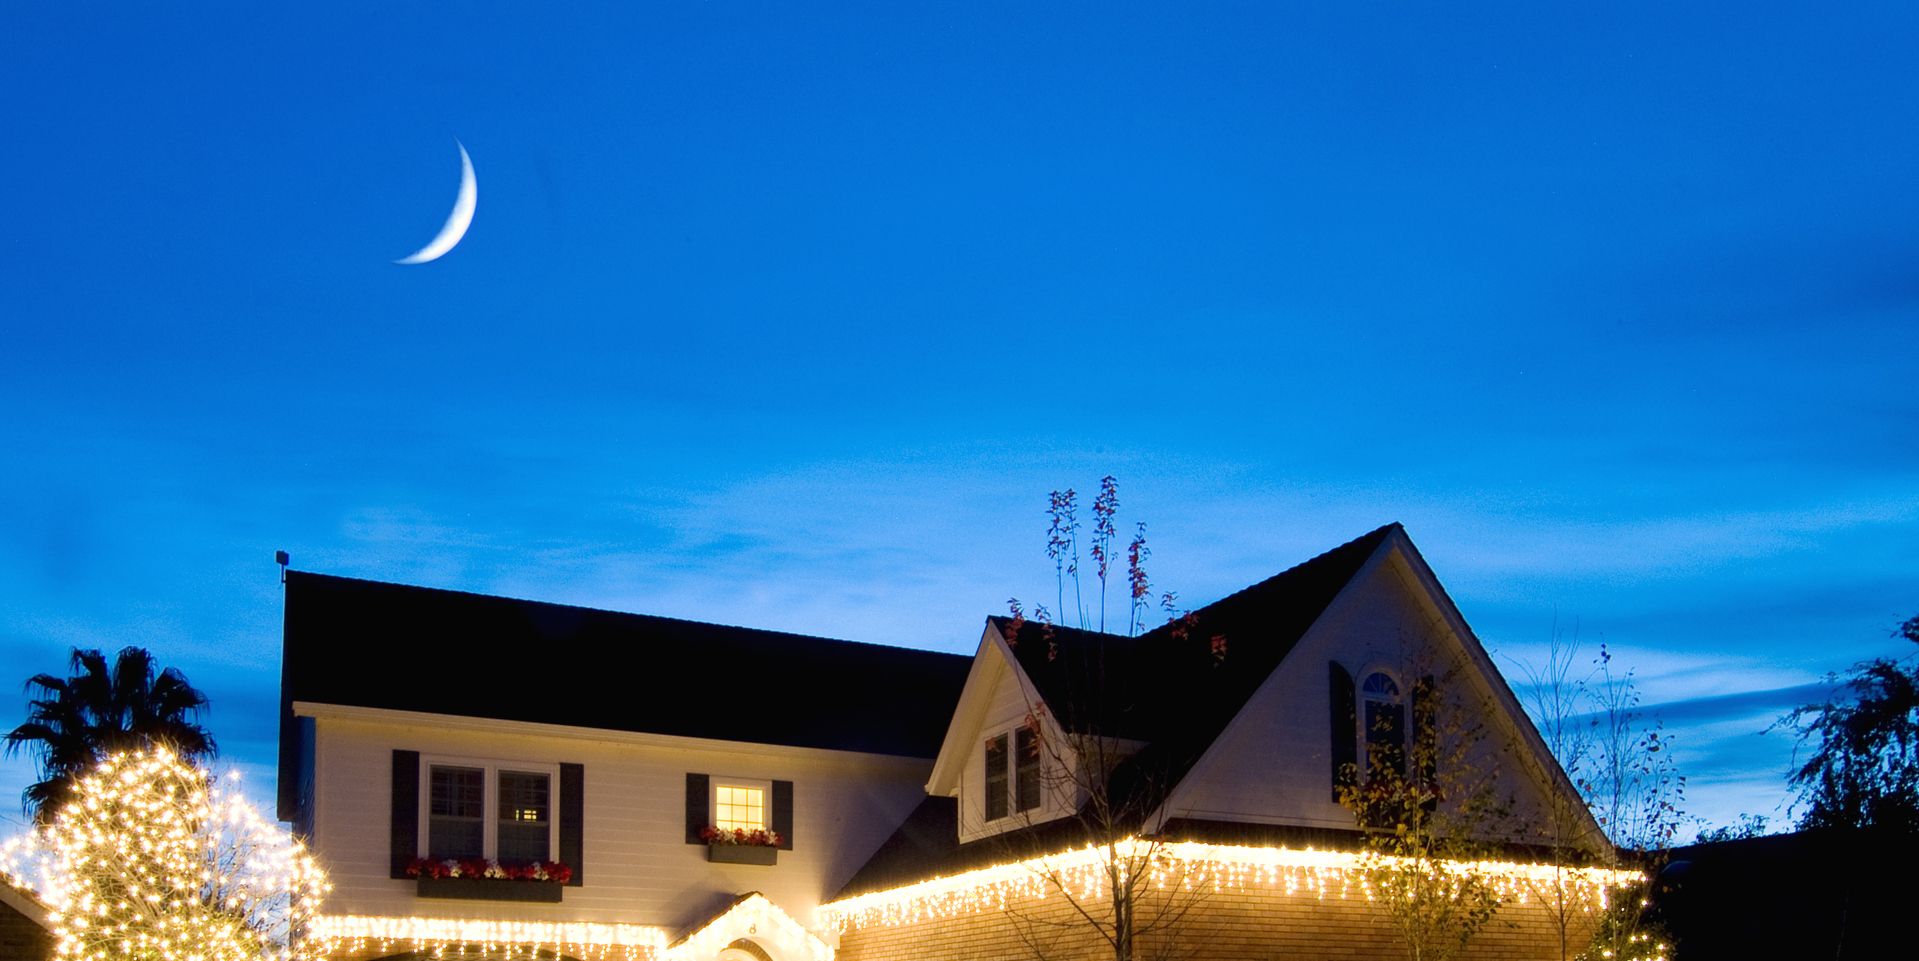 beautiful christmas lights on houses